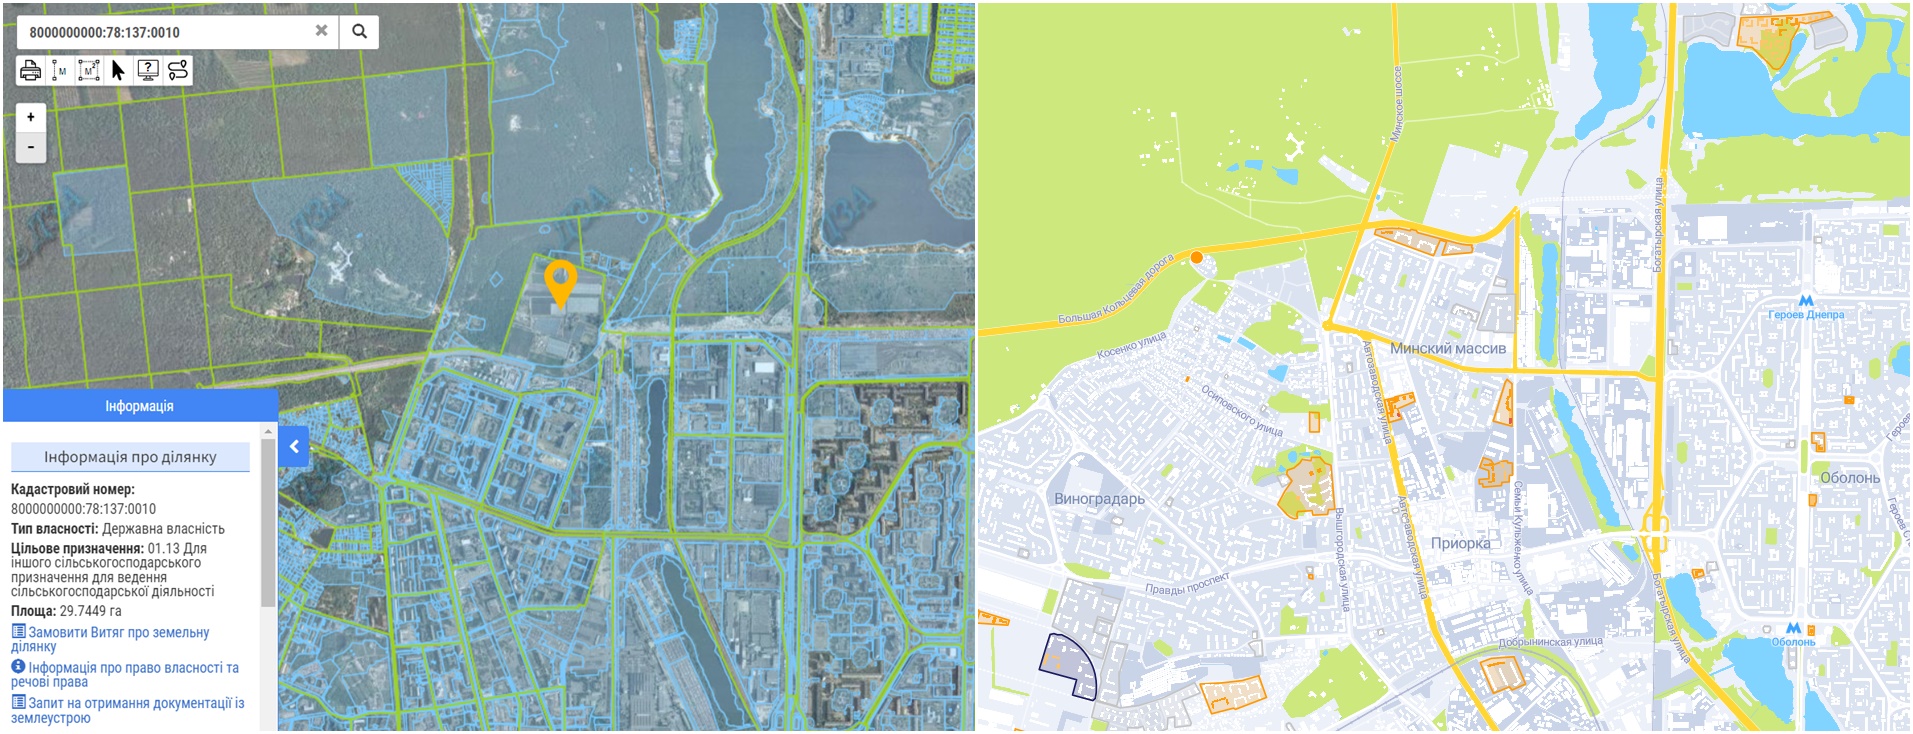 Проект нового микрорайона по ул. Вышгородская, 150 данные кадастра и на карте